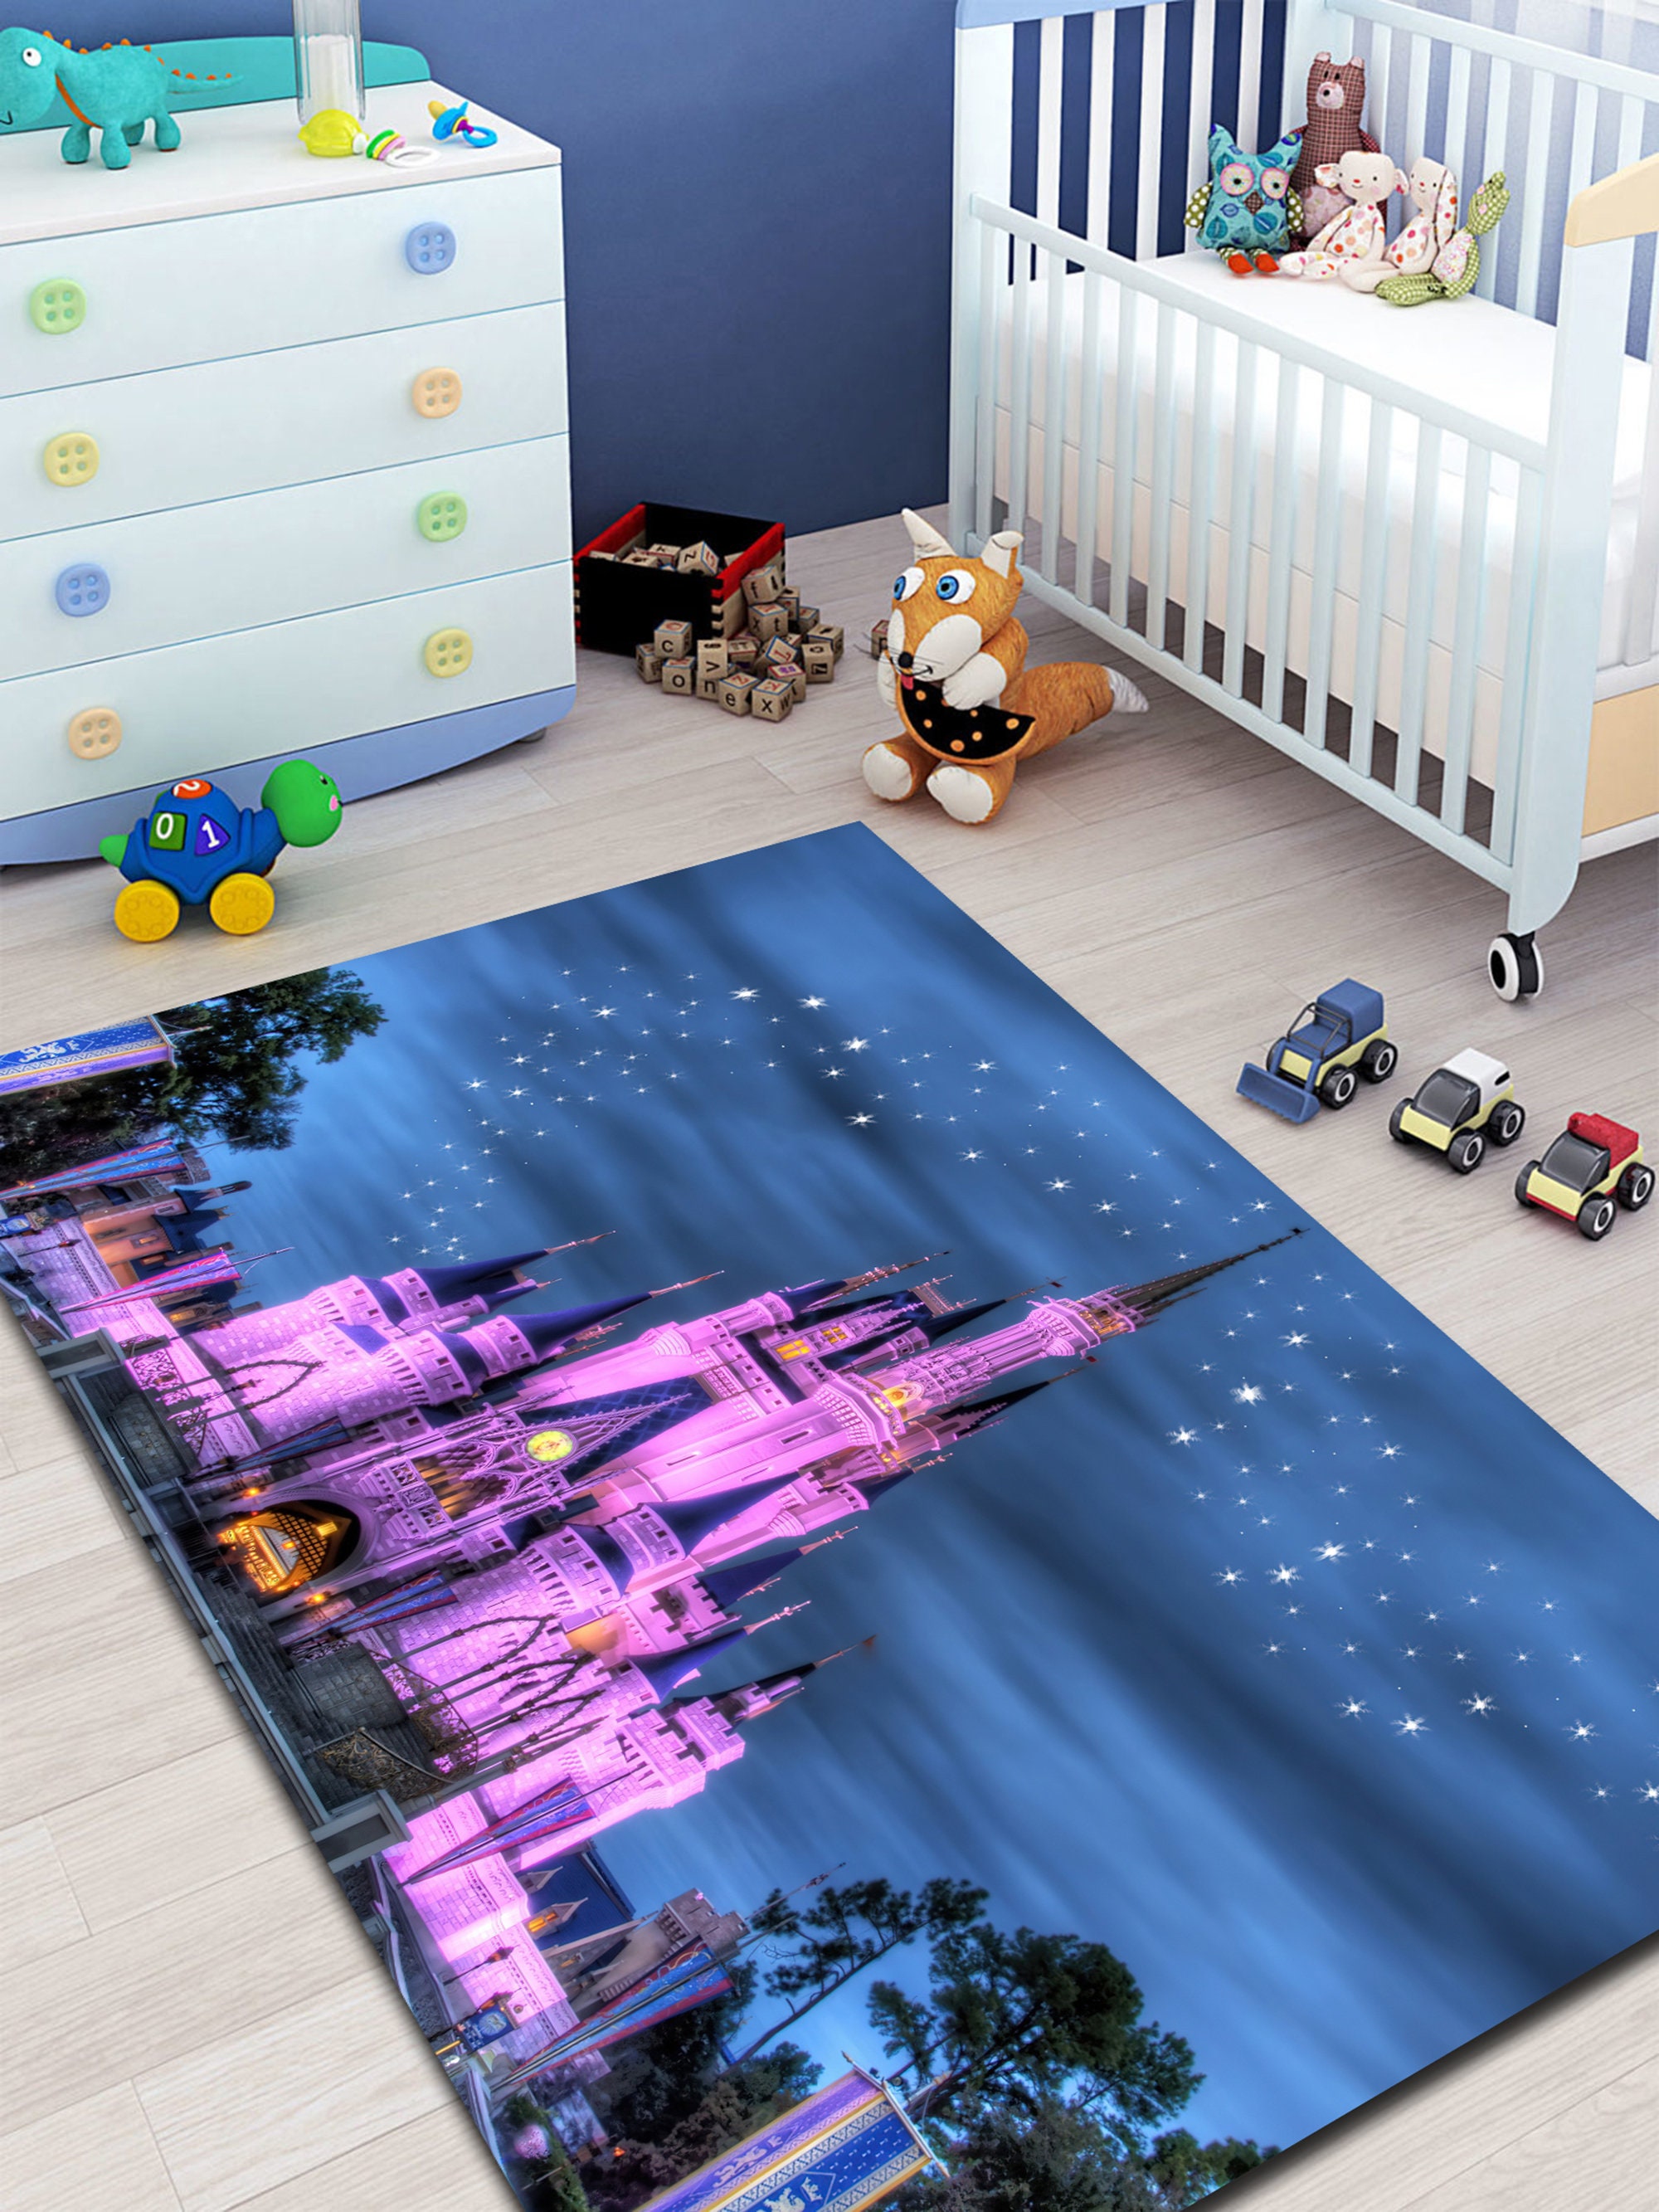 Discover Tappeto da soggiorno, Tappeto per bambini, Tappeto Disneyland